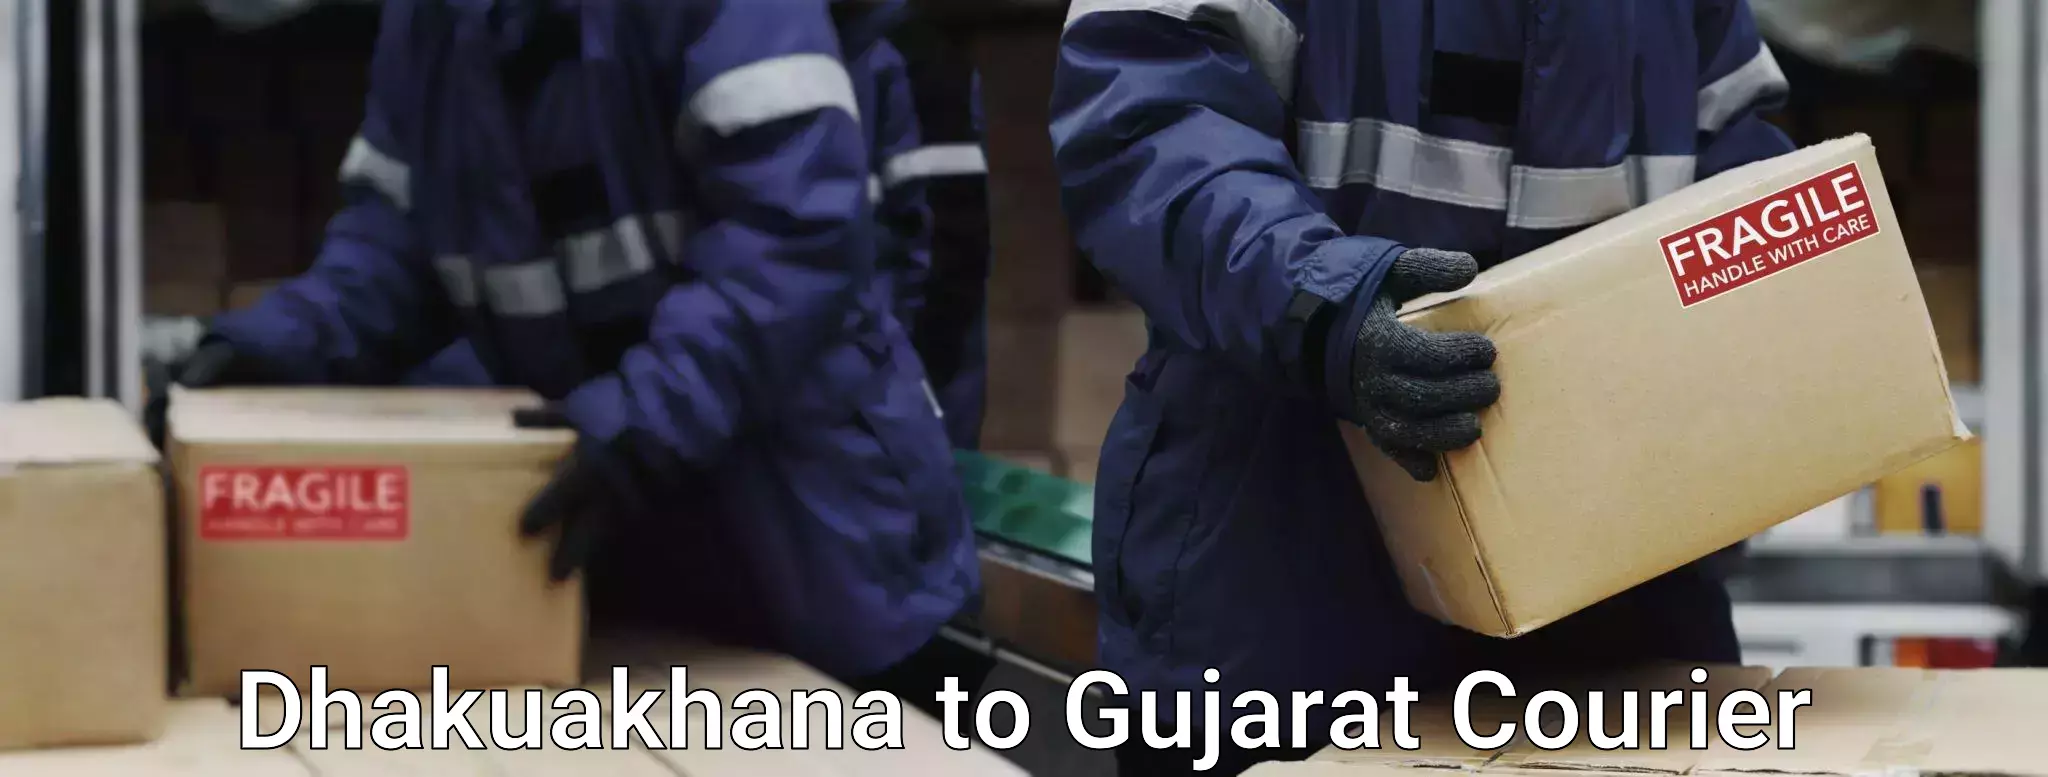 Baggage shipping advice Dhakuakhana to Mehsana